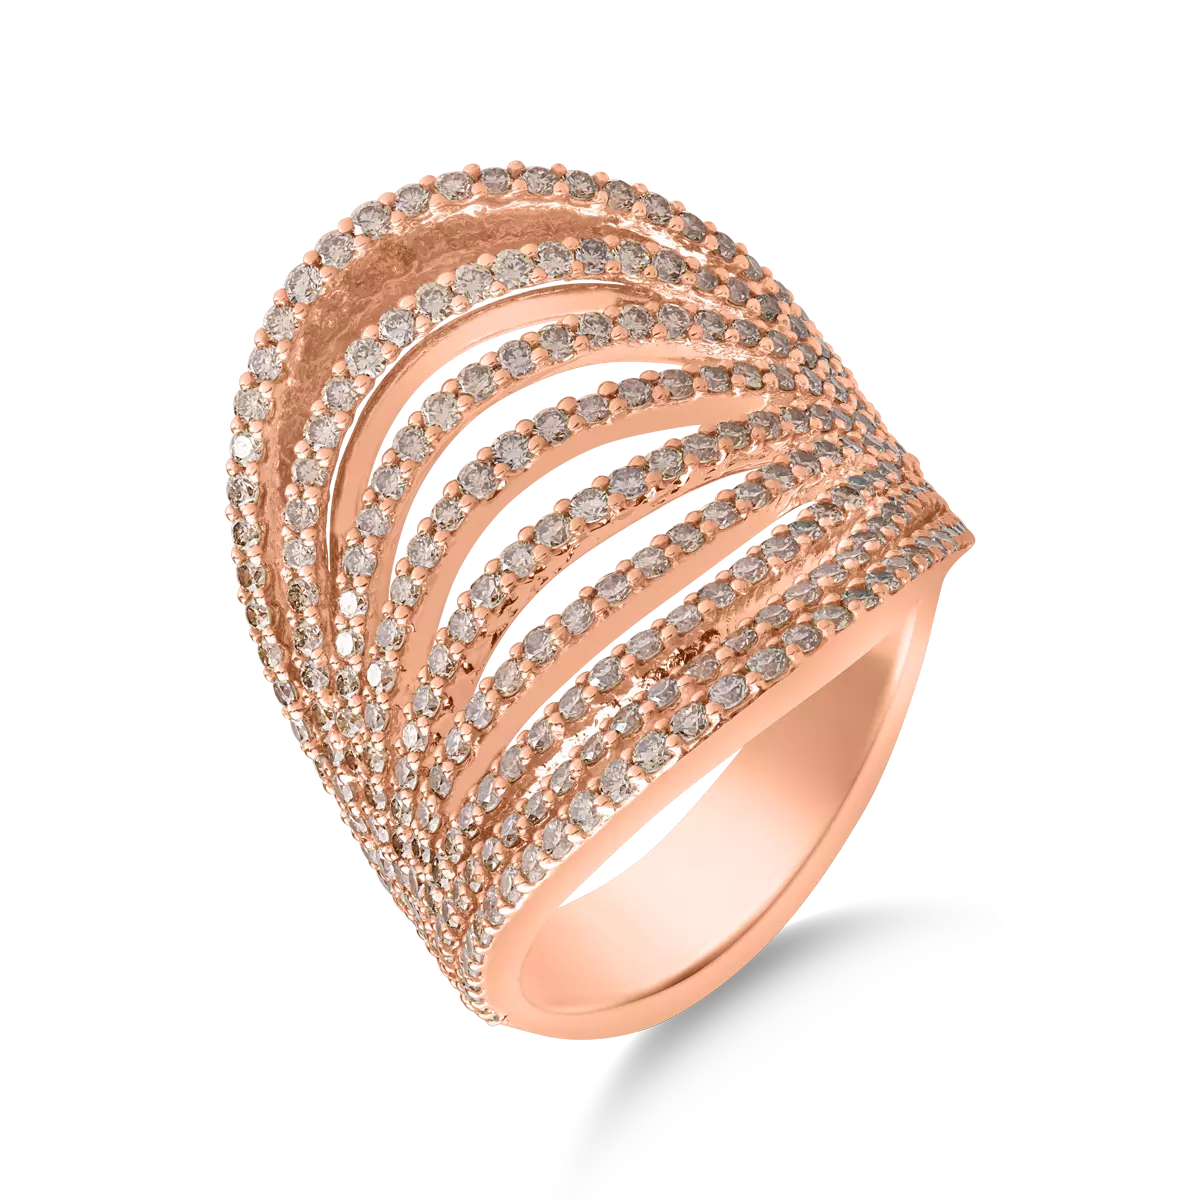 18k rózsaszín arany gyűrű, barna gyémántokkal 2.18ct